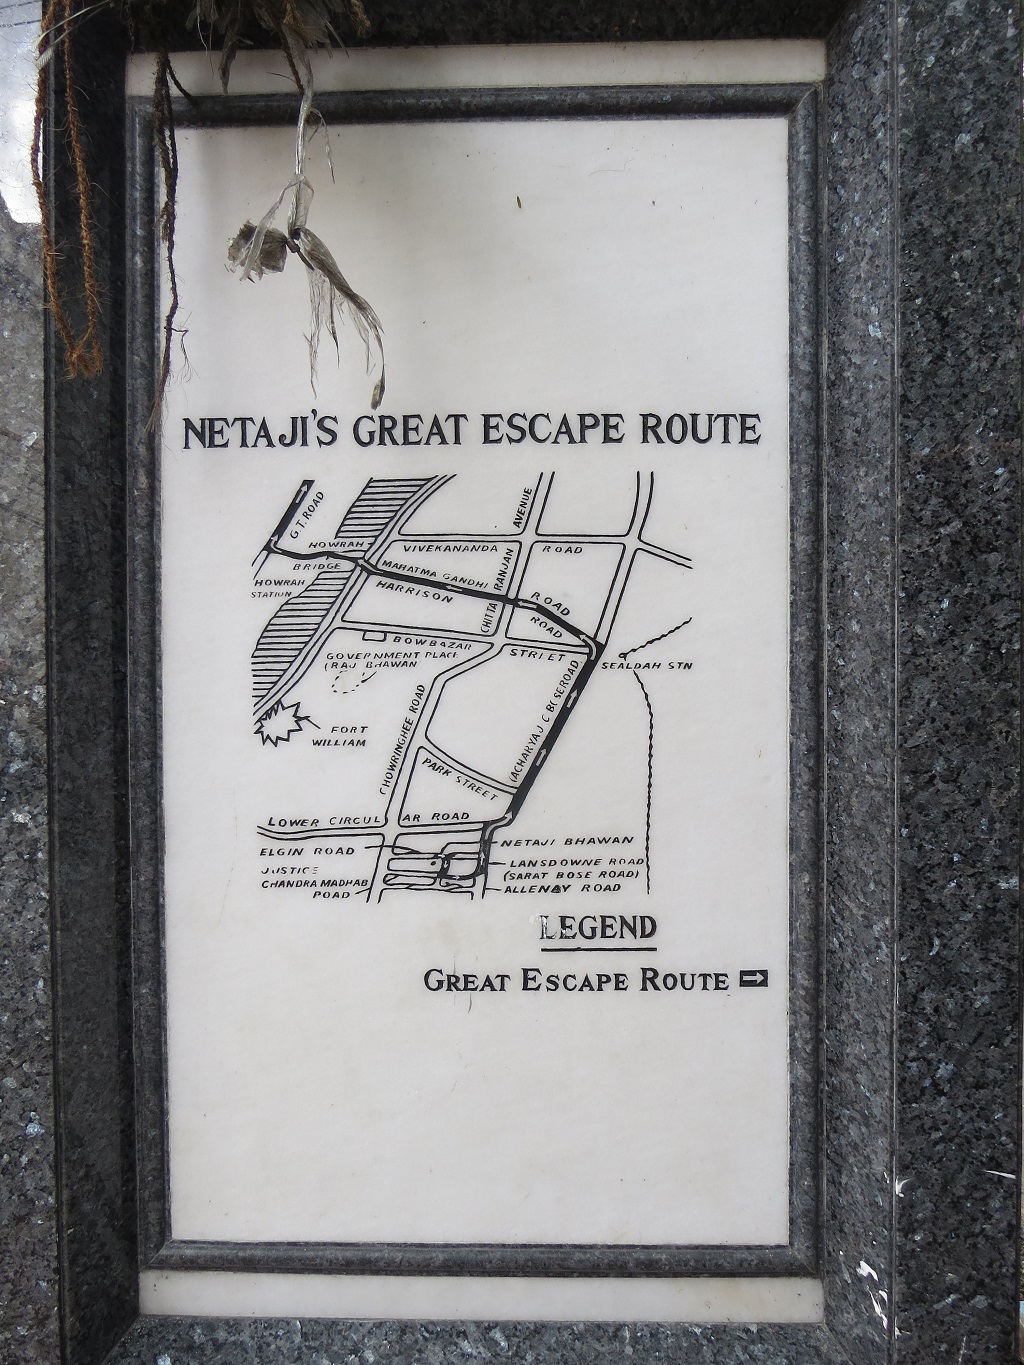 Netaji's Great Escape Route